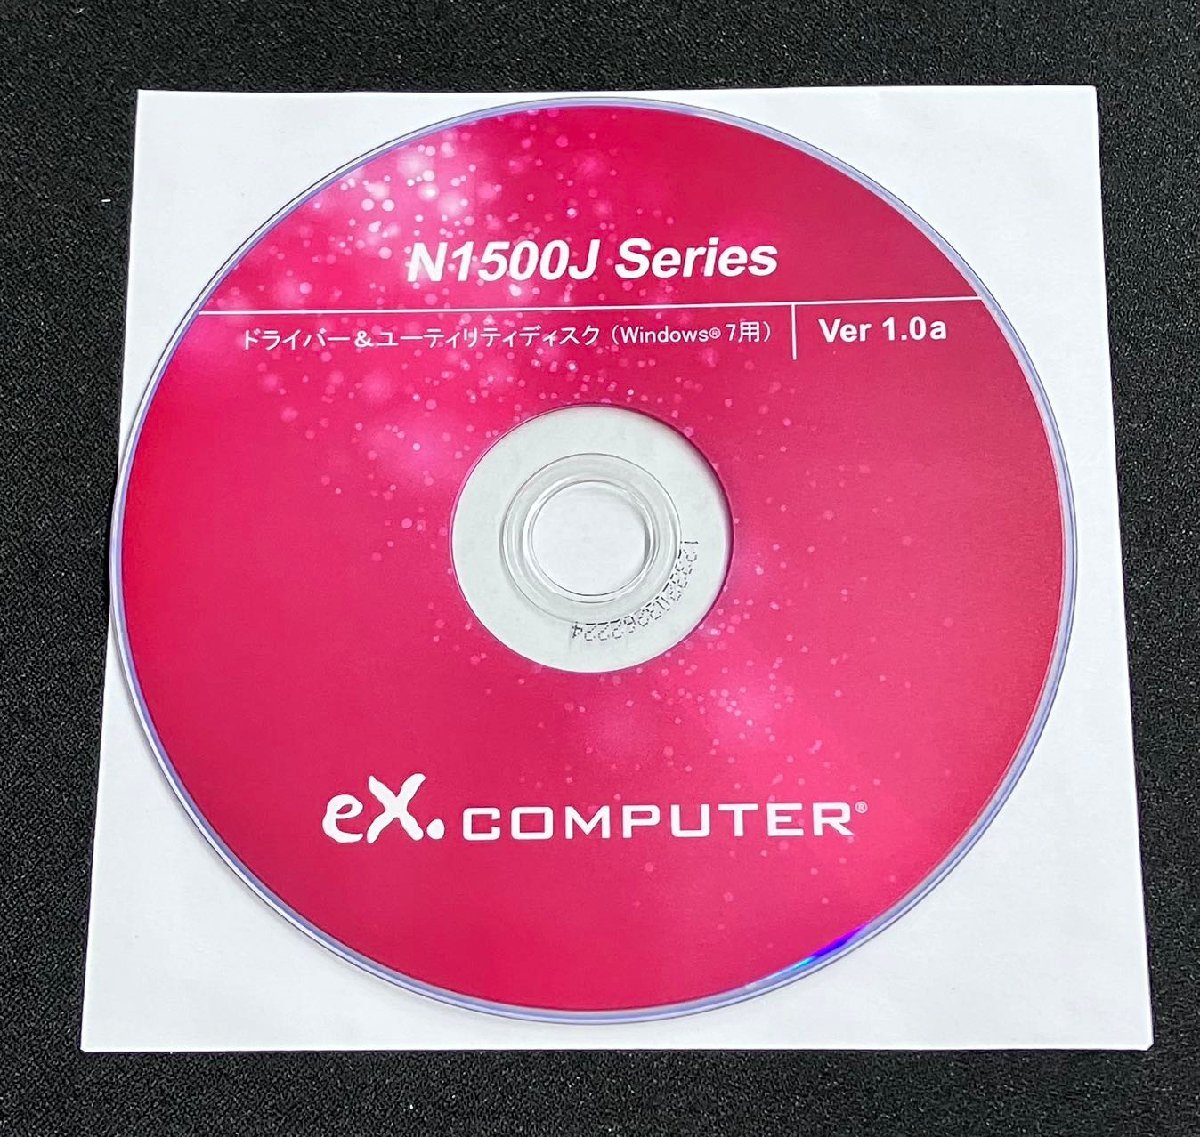 2YXS1370★ товар в состоянии "как есть" ★eX.computer N1500J серия   сухой ...＆ утилита   диск  Windows 7  для  Ver 1.0a